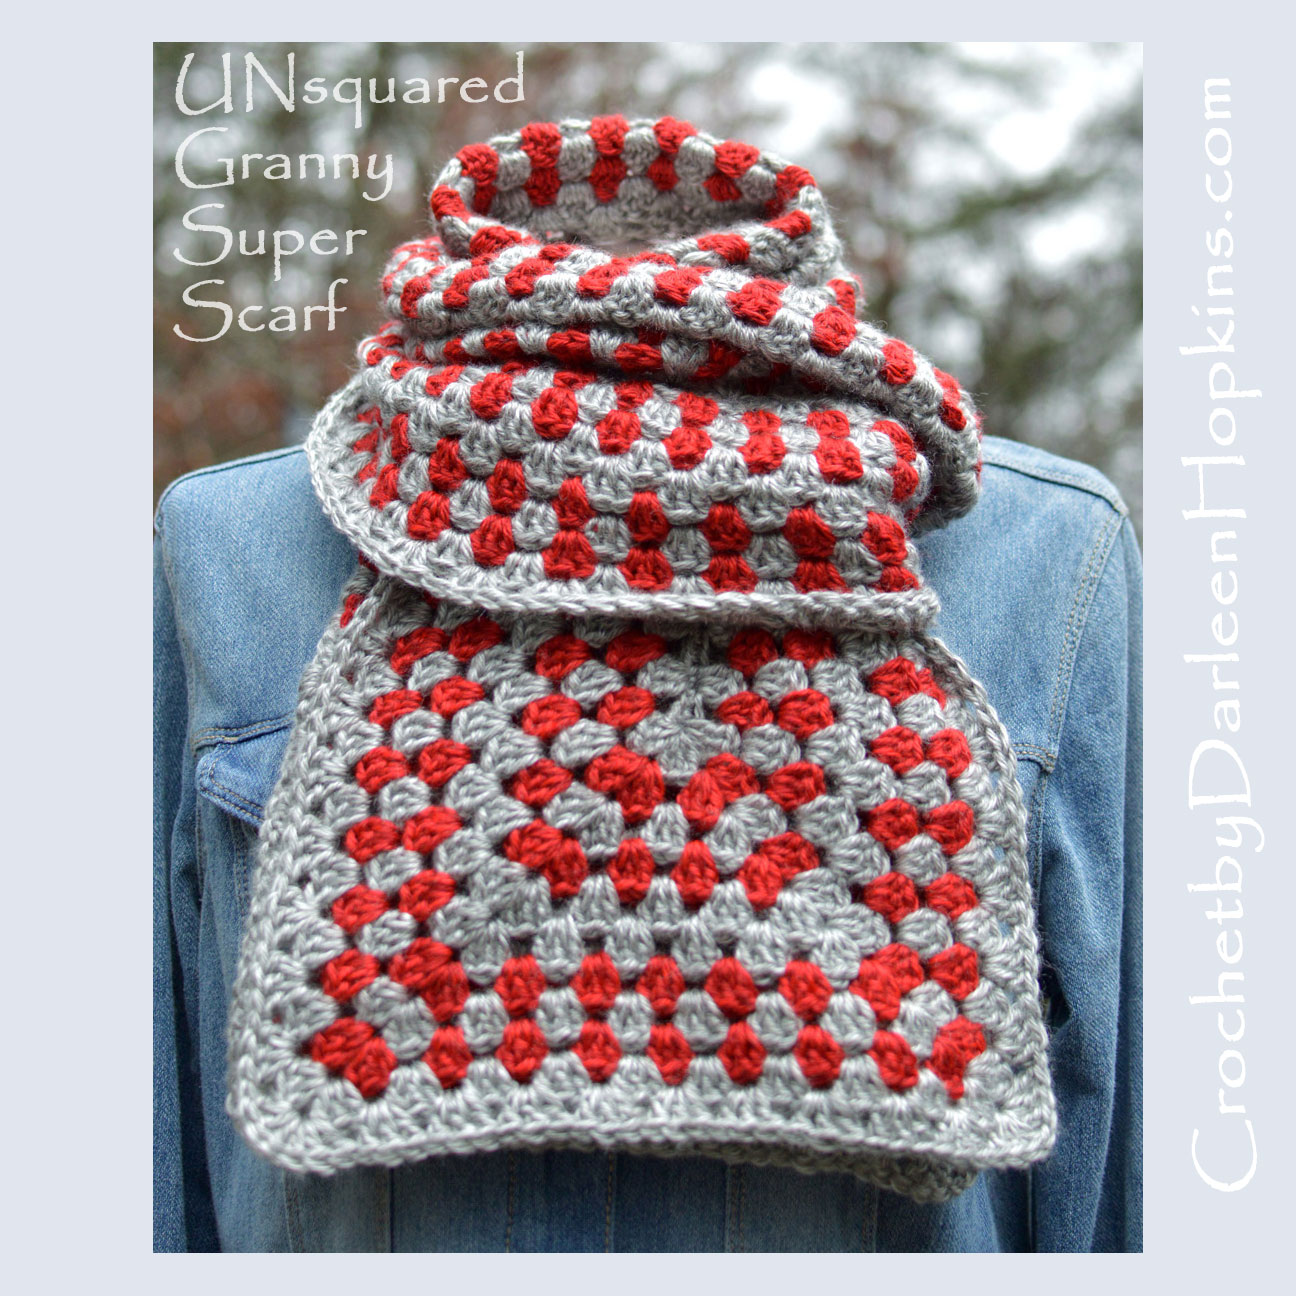 Crochet-pattern-UNsquared-Granny-Super-Scarf